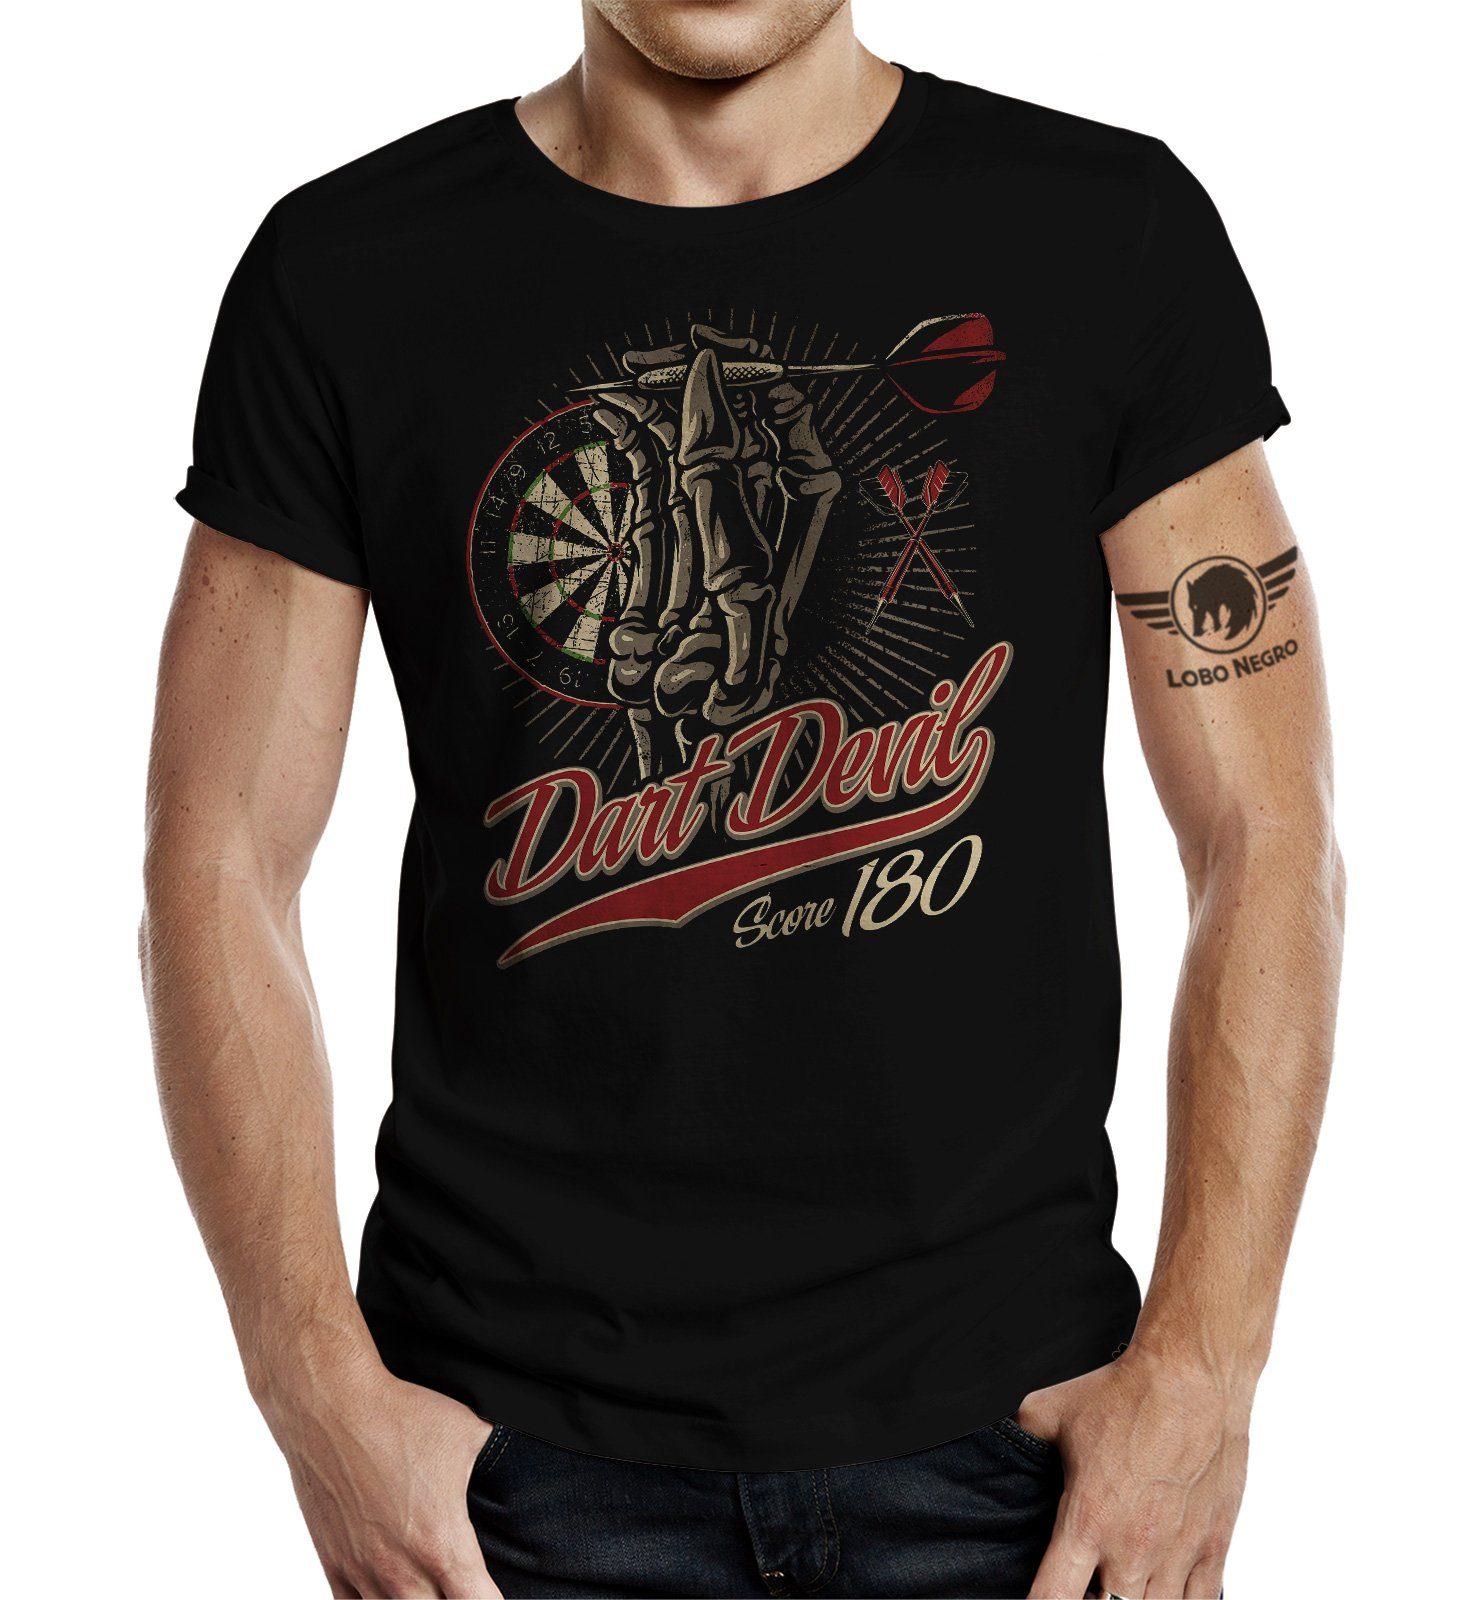 LOBO NEGRO® T-Shirt für Dartspieler 180 Dart Score und Fans: Devil